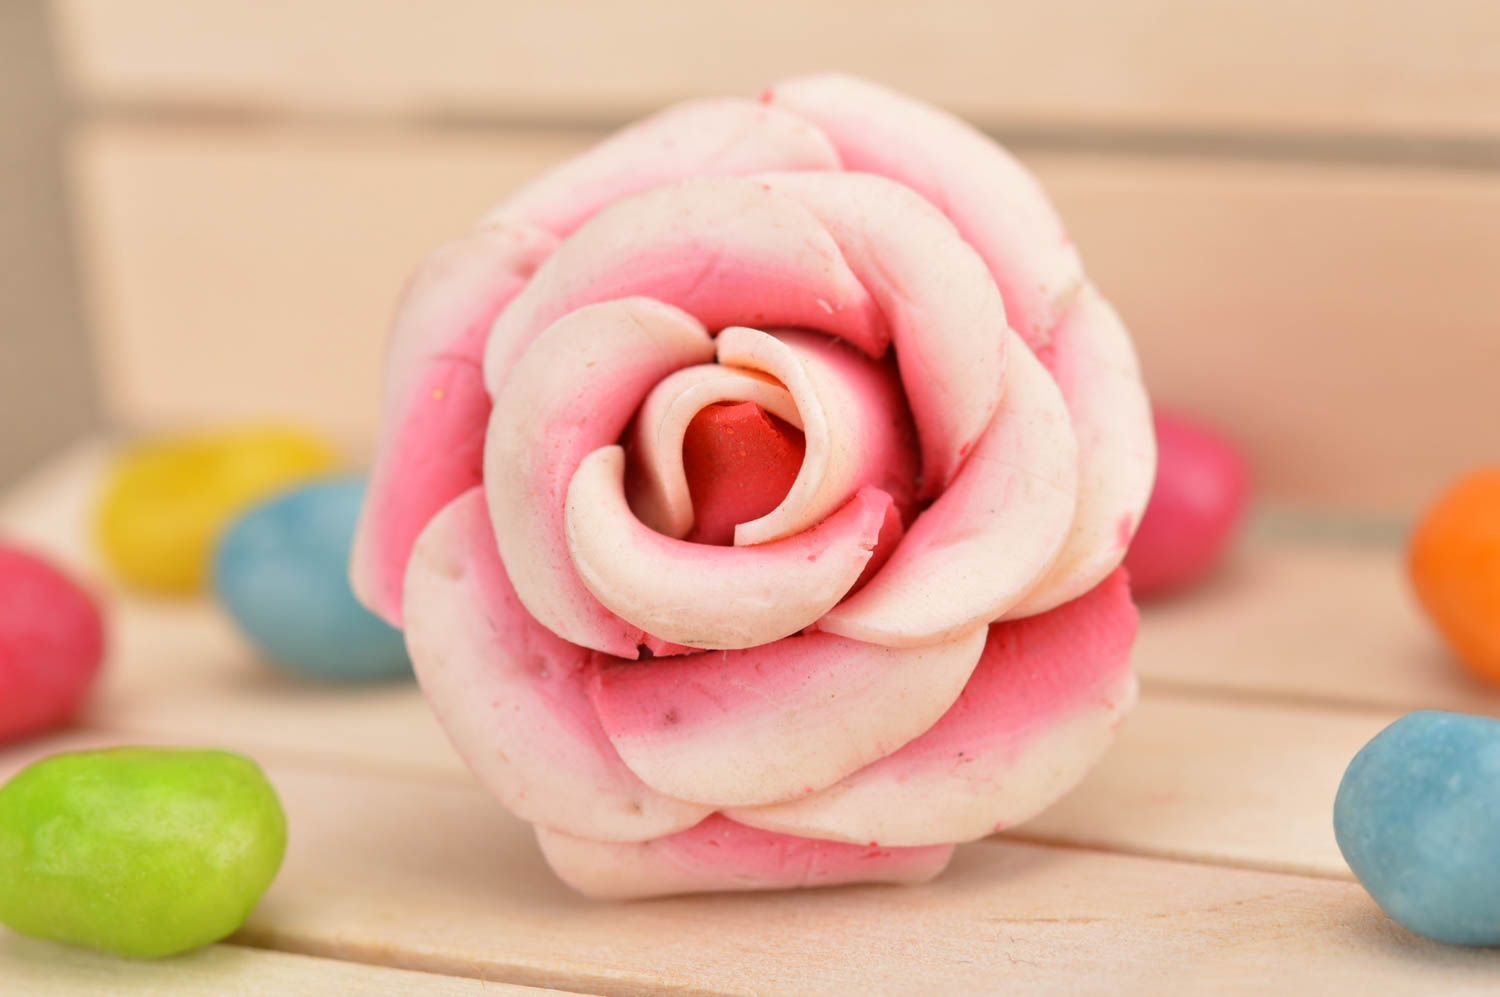 Кольцо цветок из полимерной глины розовое в виде розы крупное ручная работа фото 1